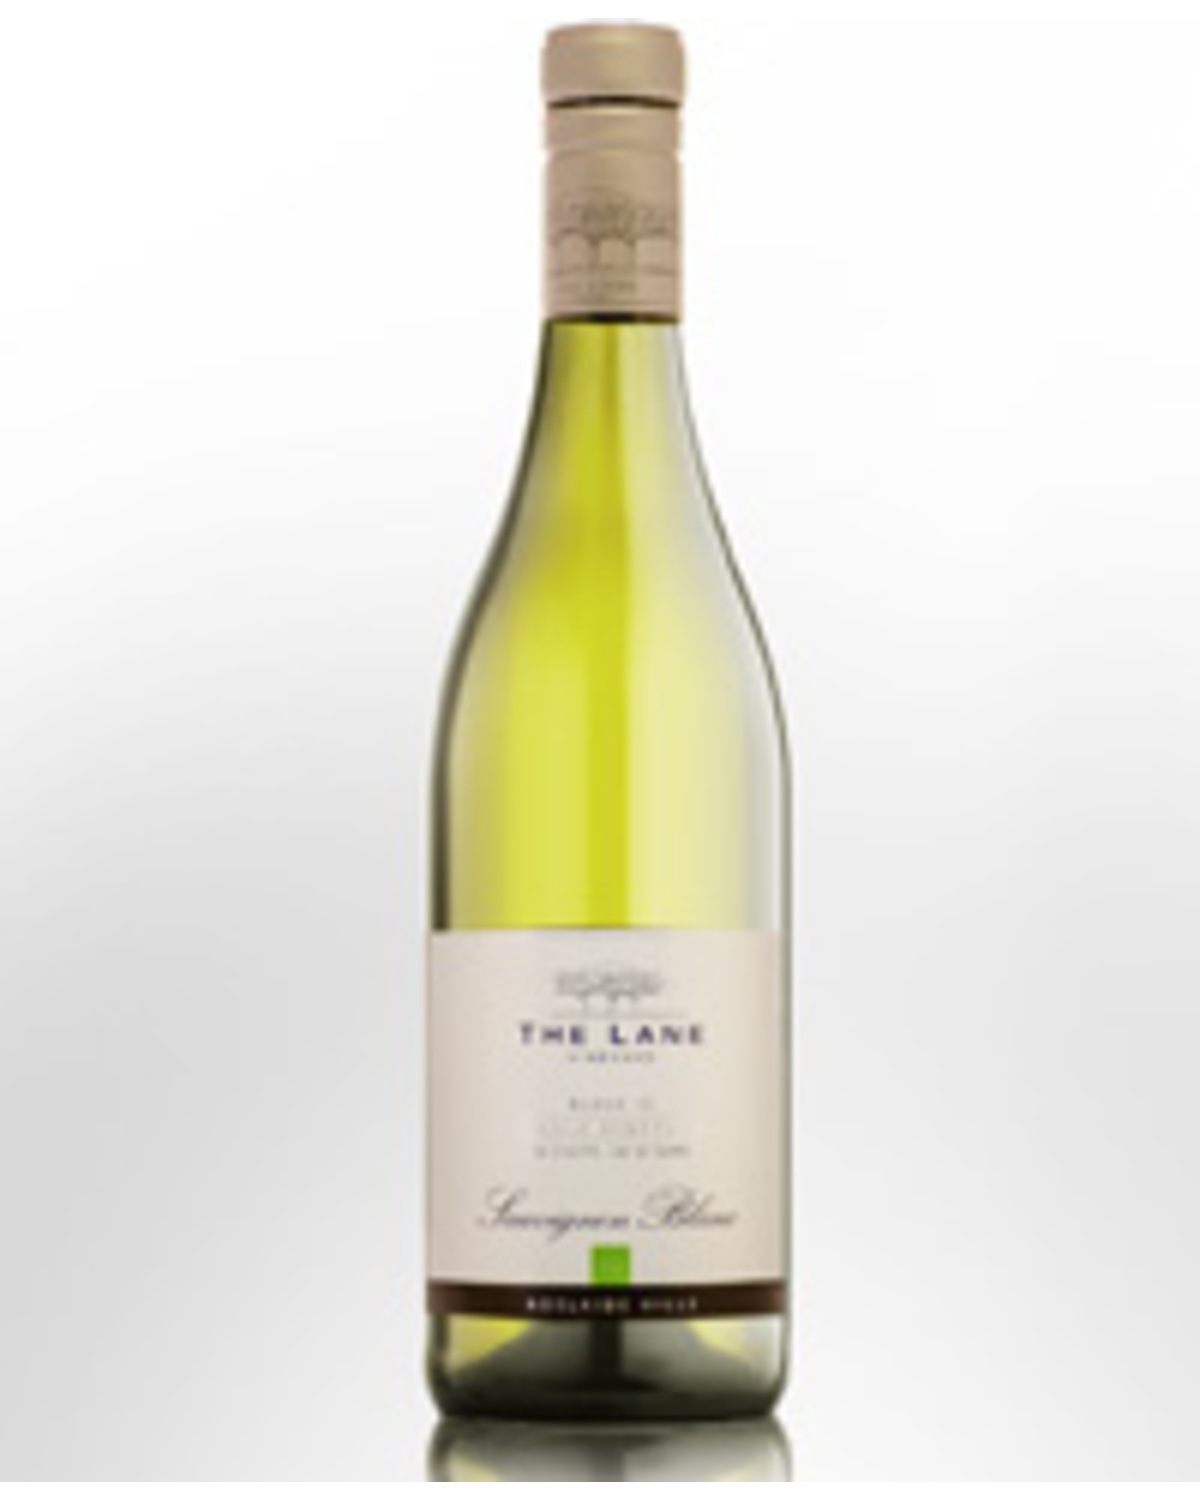 2012 The Lane Vineyard Block 10 Single Vineyard Sauvignon Blanc Nicks